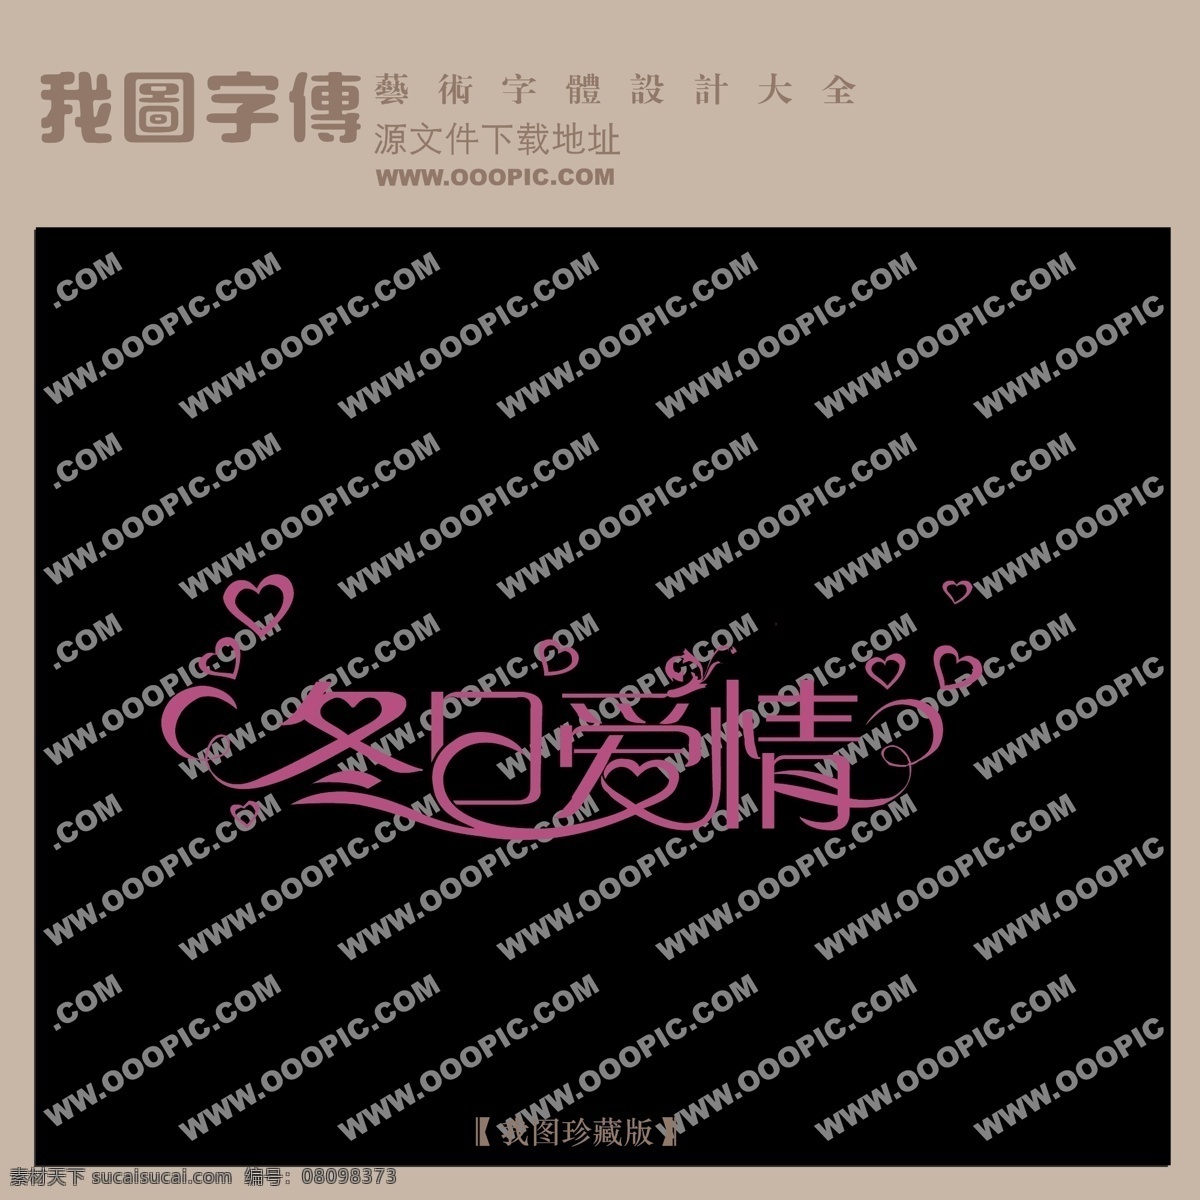 冬日 爱情 中文 现代艺术 字 创意 美工 艺术 冬日爱情 中国字体下载 矢量图